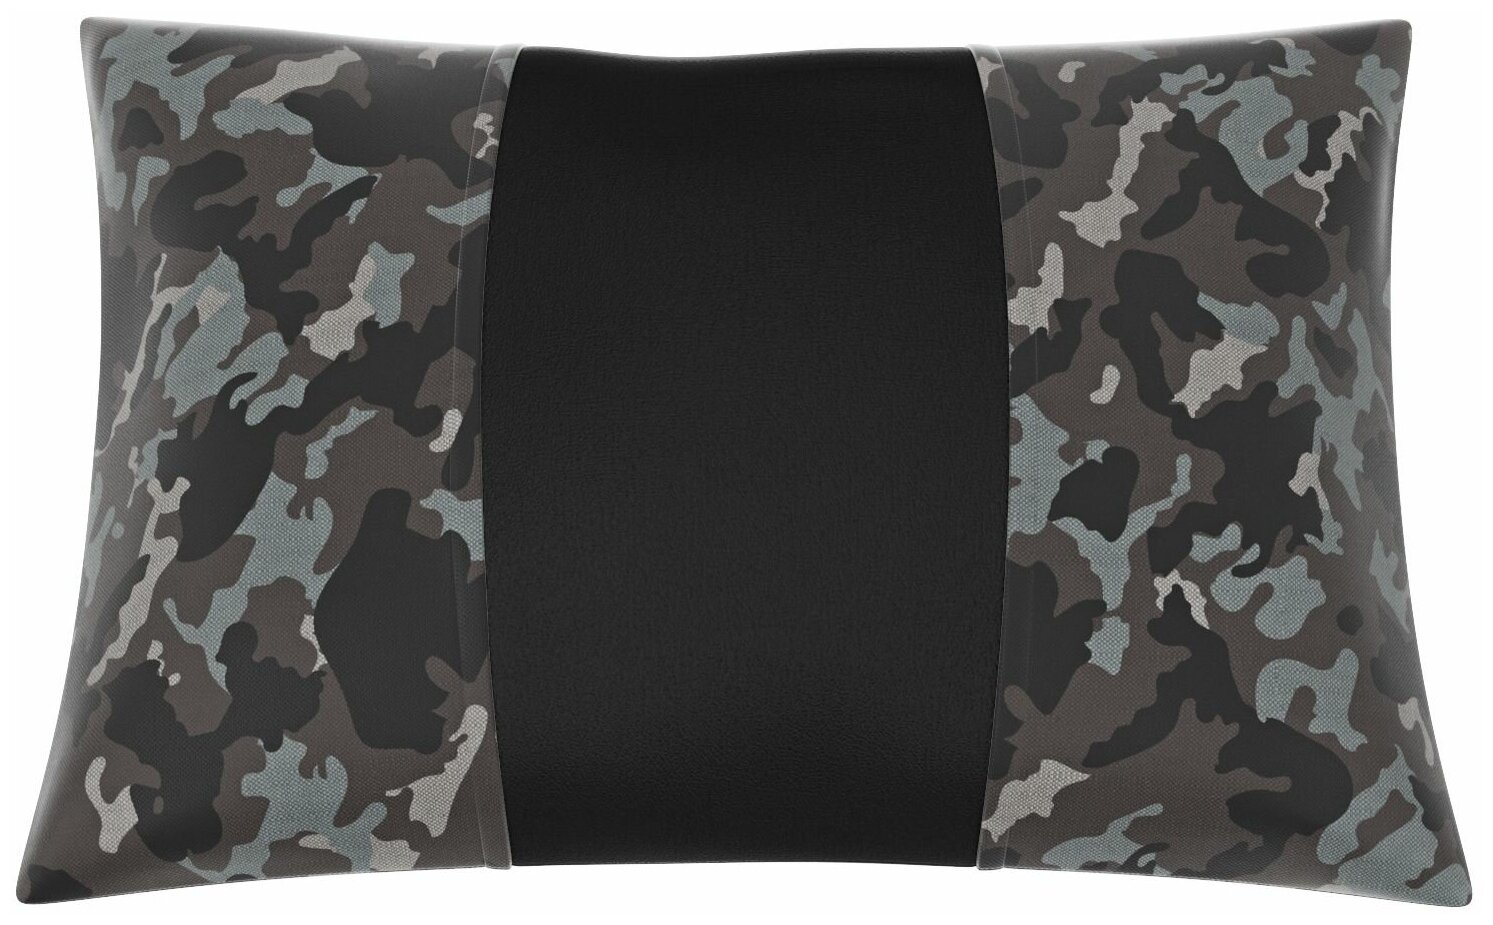 Автомобильная подушка для Citroen Jumpy Multispace 3 (Ситроен Джампи Мультиспейс 3). Середина: чёрная экокожа. Боковины: брезент НАТО. 1 шт.